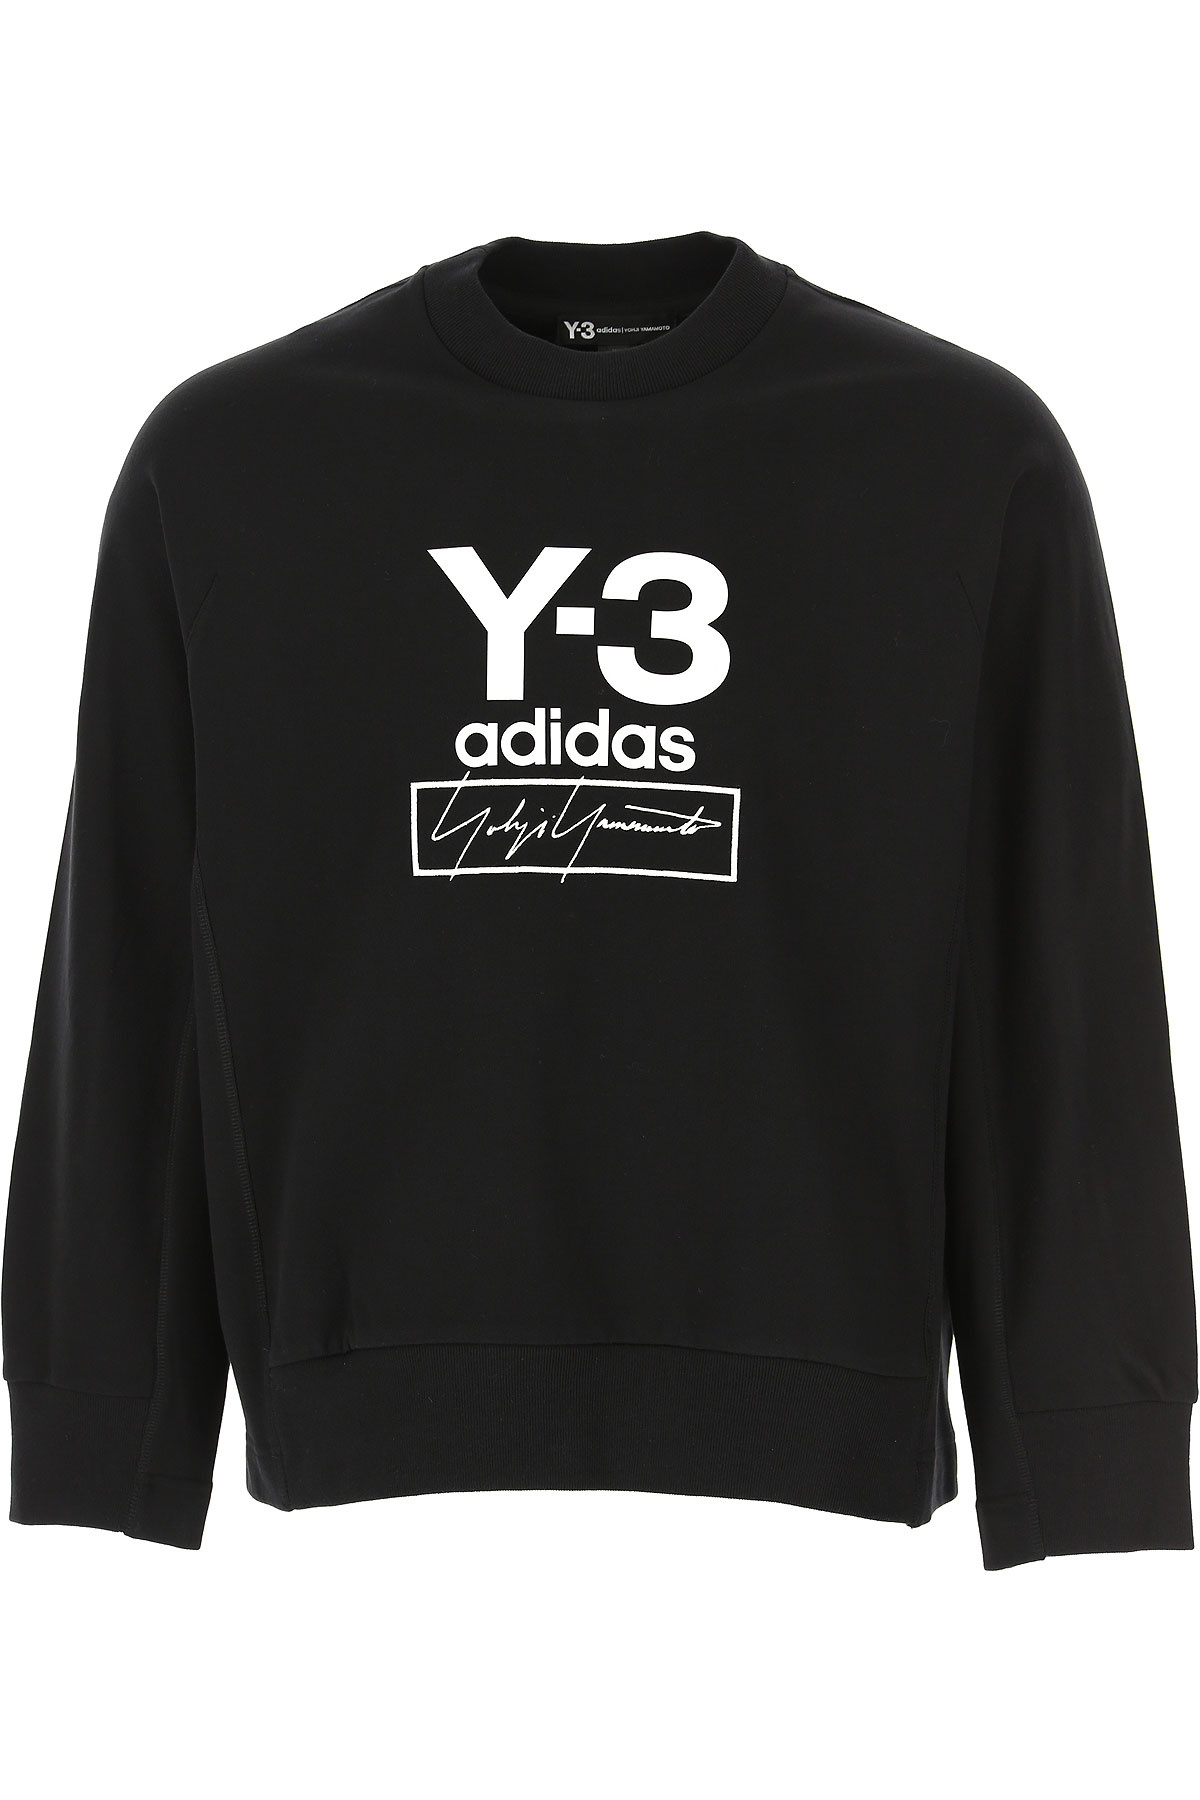 Y3 by Yohji Yamamoto Sweatshirt für Herren, Kapuzenpulli, Hoodie, Sweats Günstig im Sale, Schwarz, Baumwolle, 2017, L XL